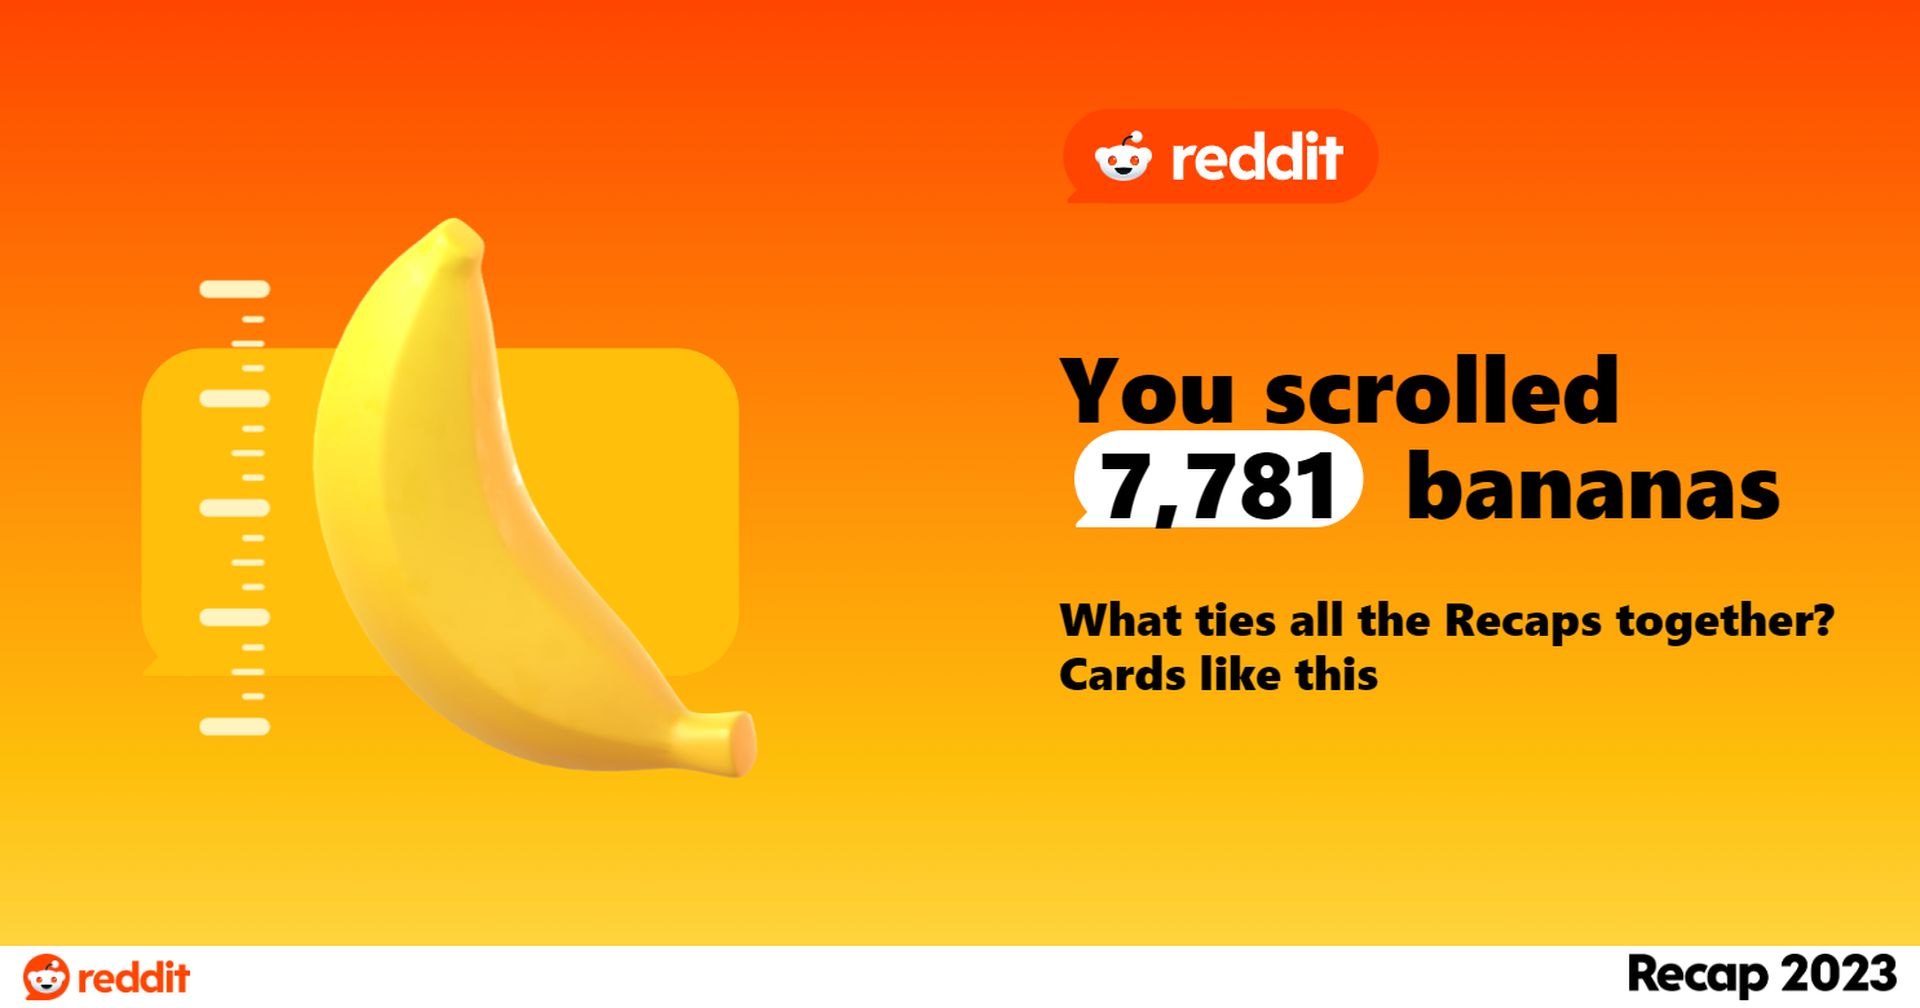 Reddit Recap 2023 ختم ہو گیا ہے! جانیں کہ اس سال آپ نے کتنے کیلے اسکرول کیے ہیں۔